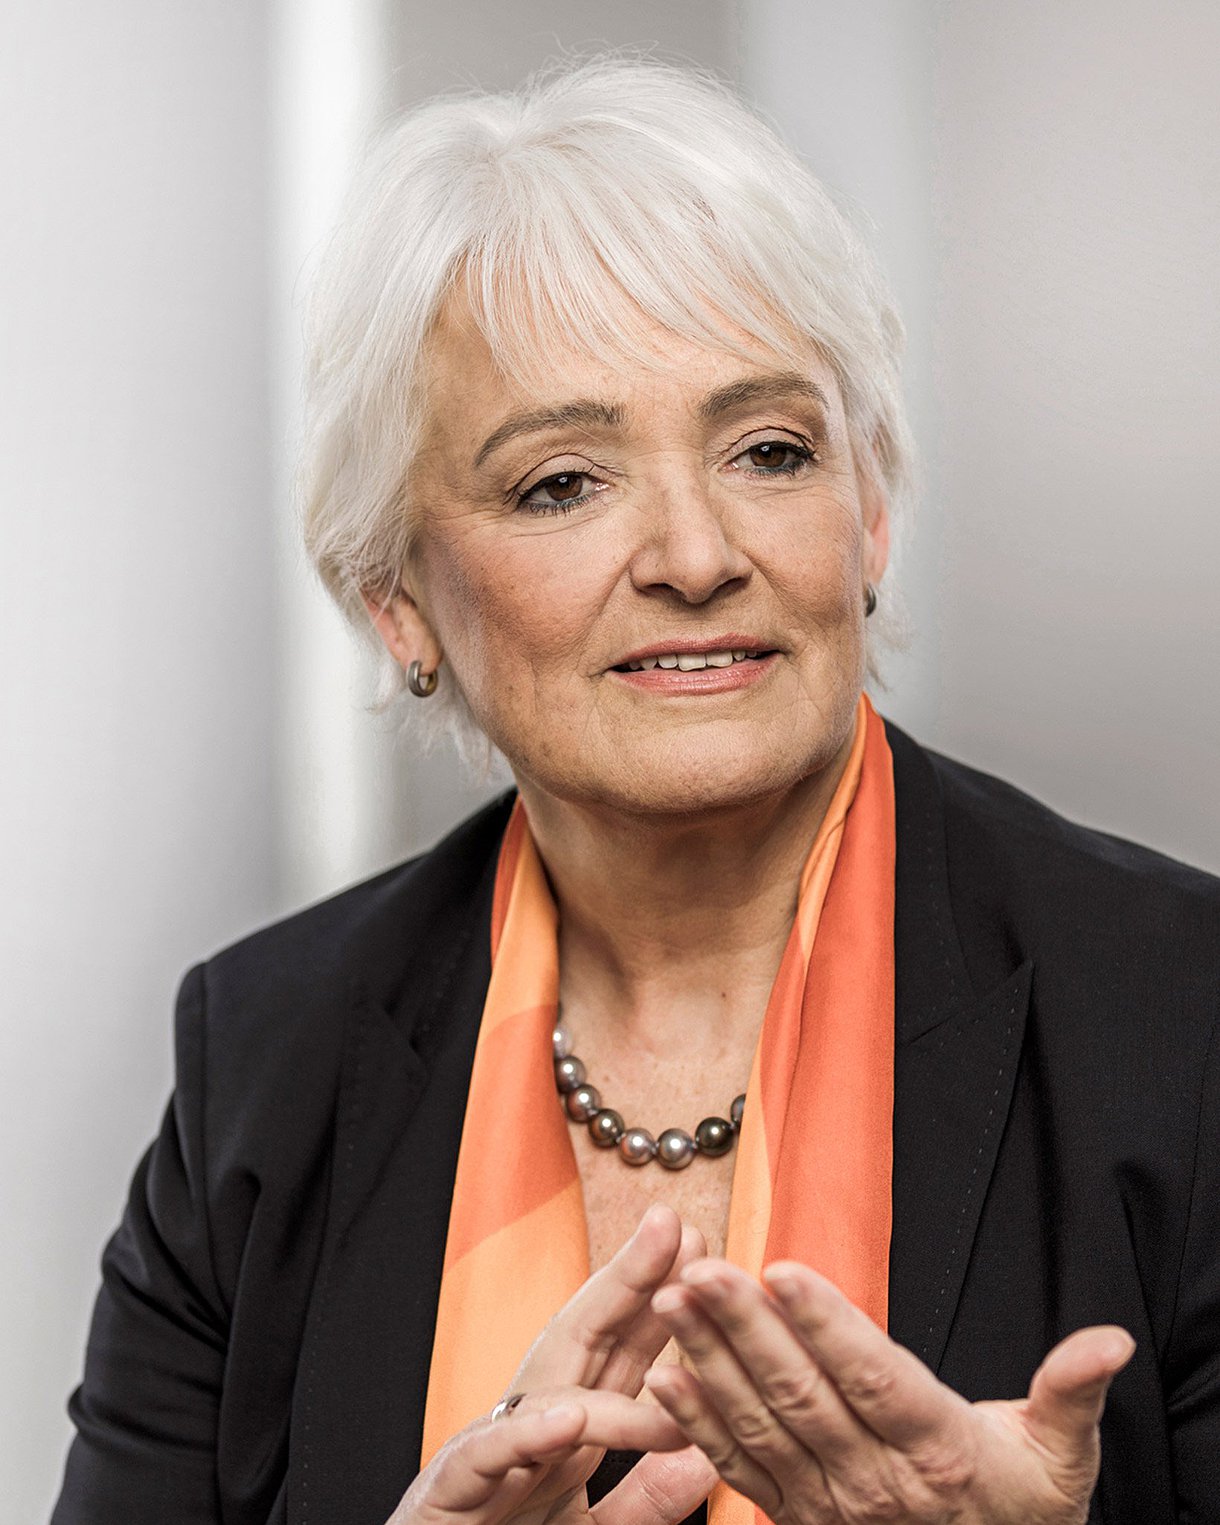 Foto: Porträtbild von Dr. Christiane Groß, Präsidentin des Deutschen Ärztinnenbundes (DÄB).